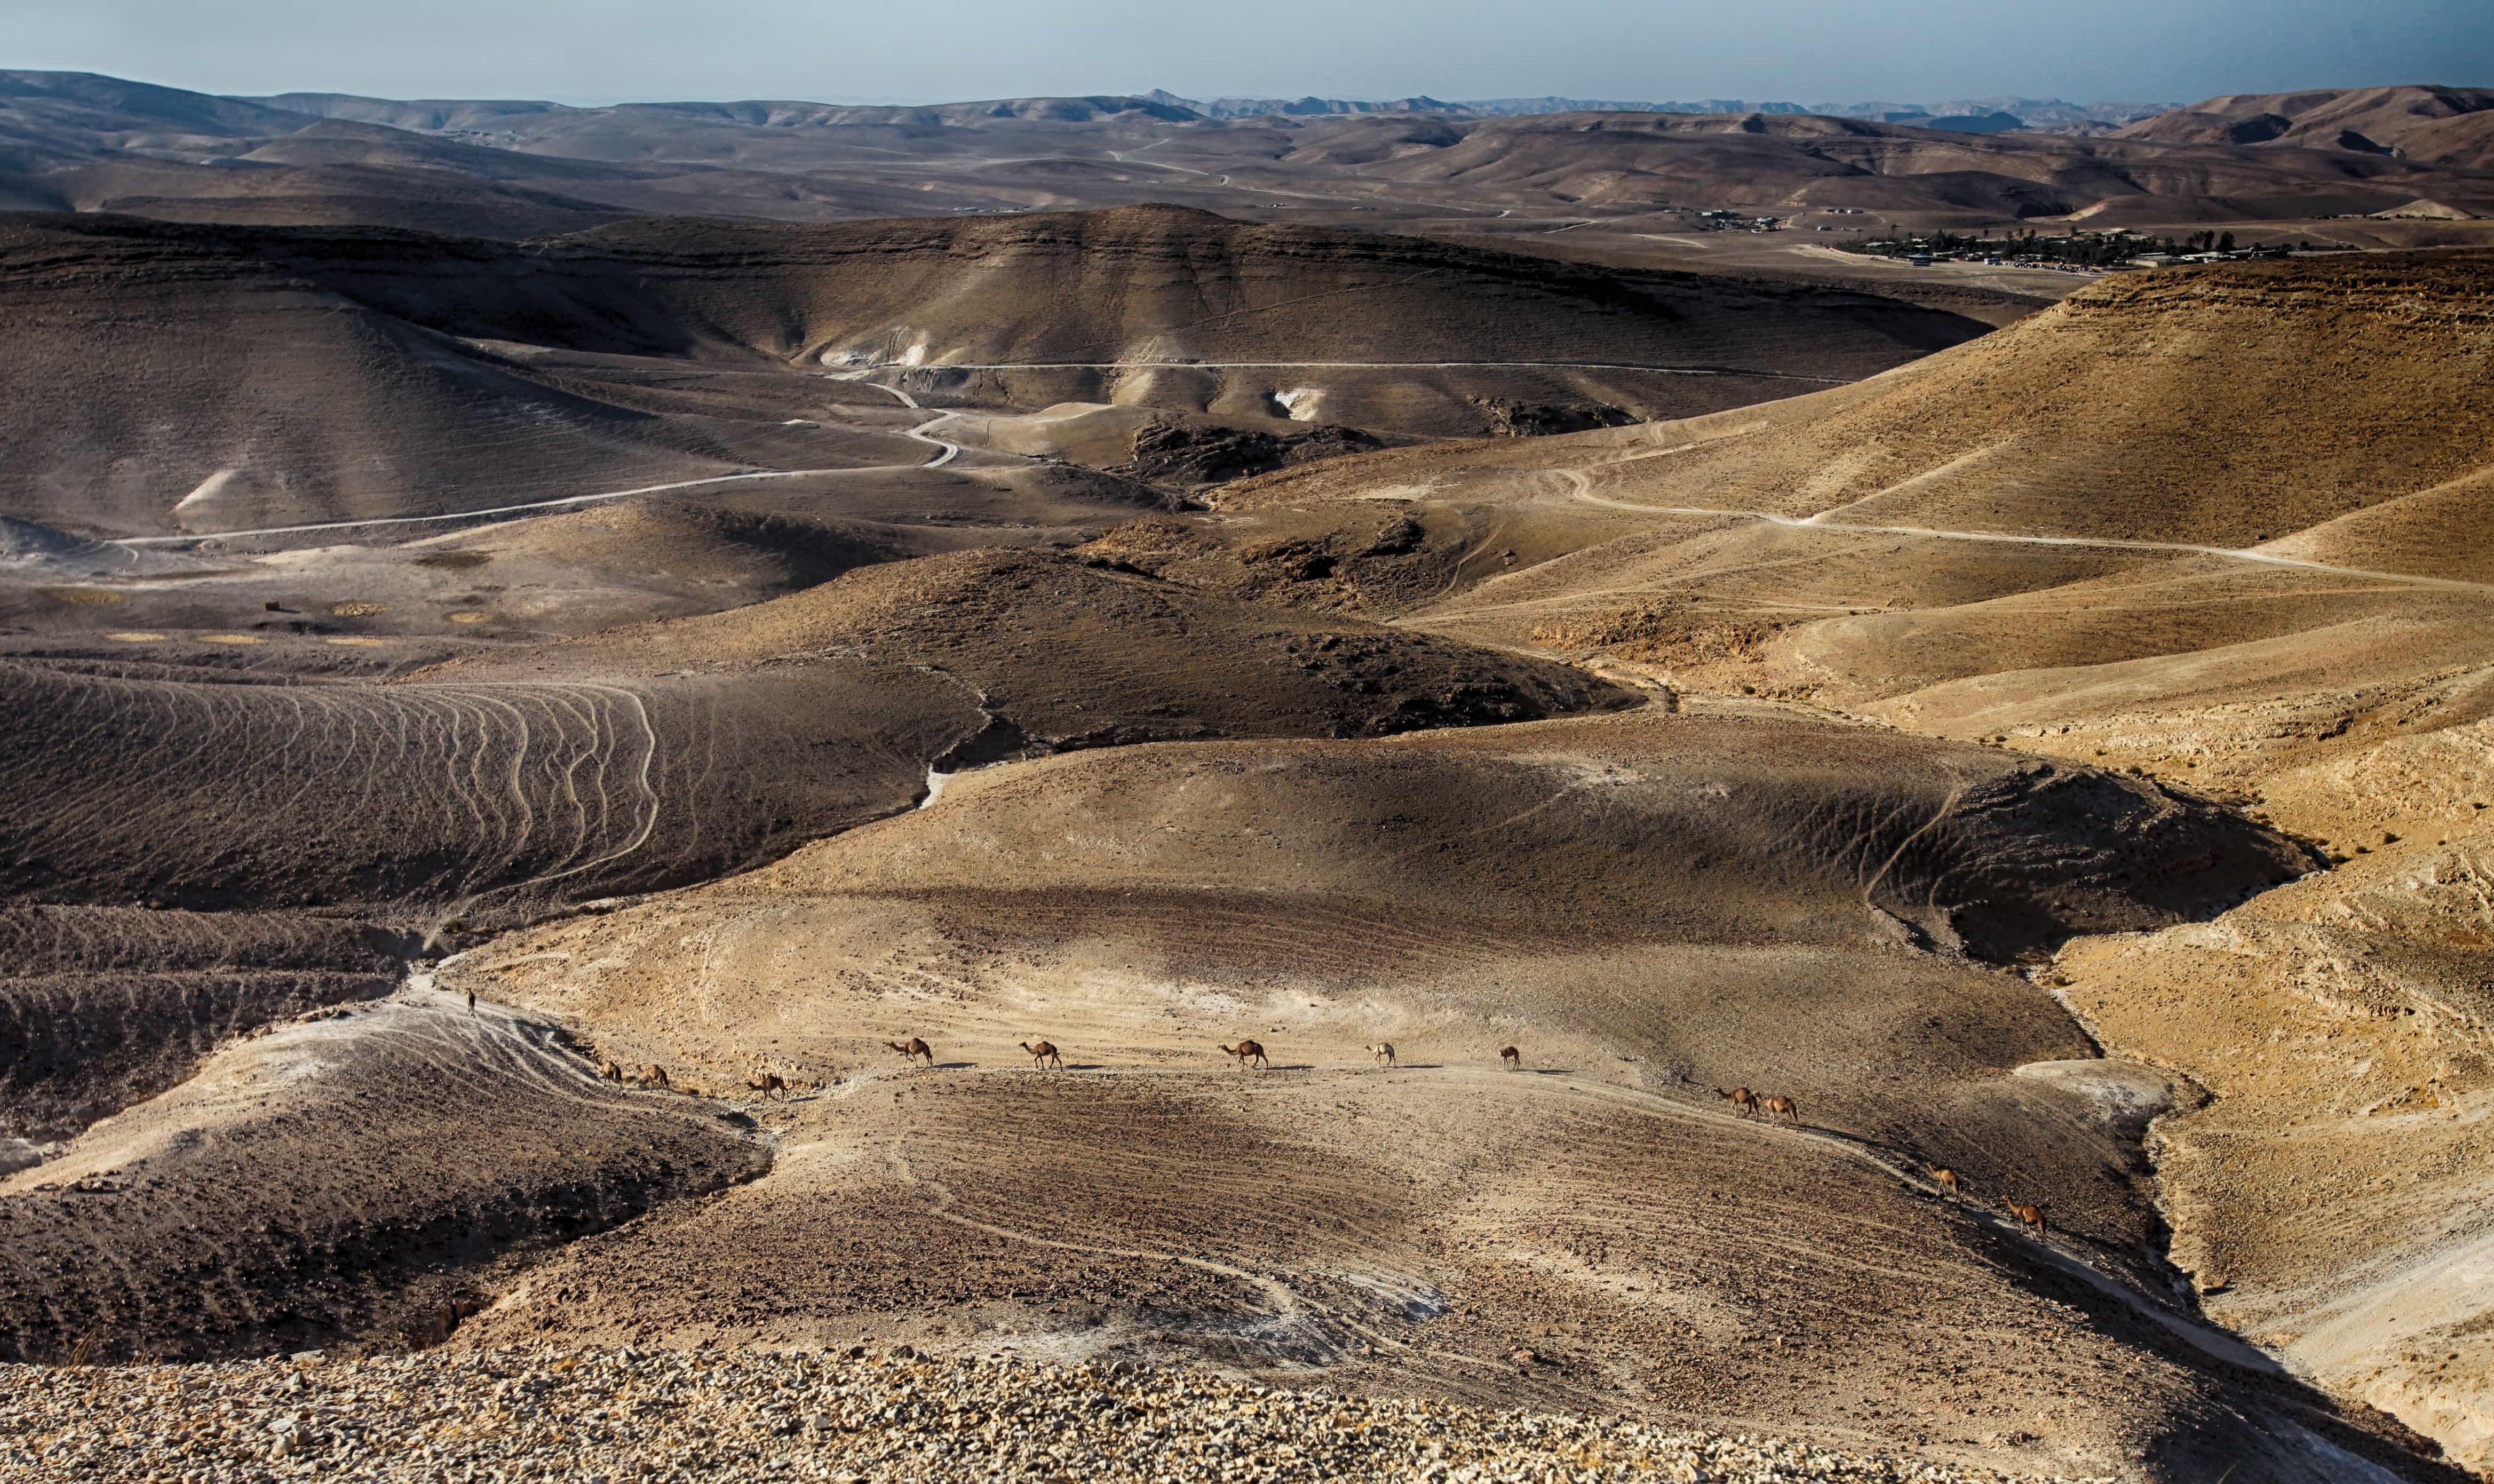 Uma paisagem surreal de deserto onde a areia movediça cai 00489 00